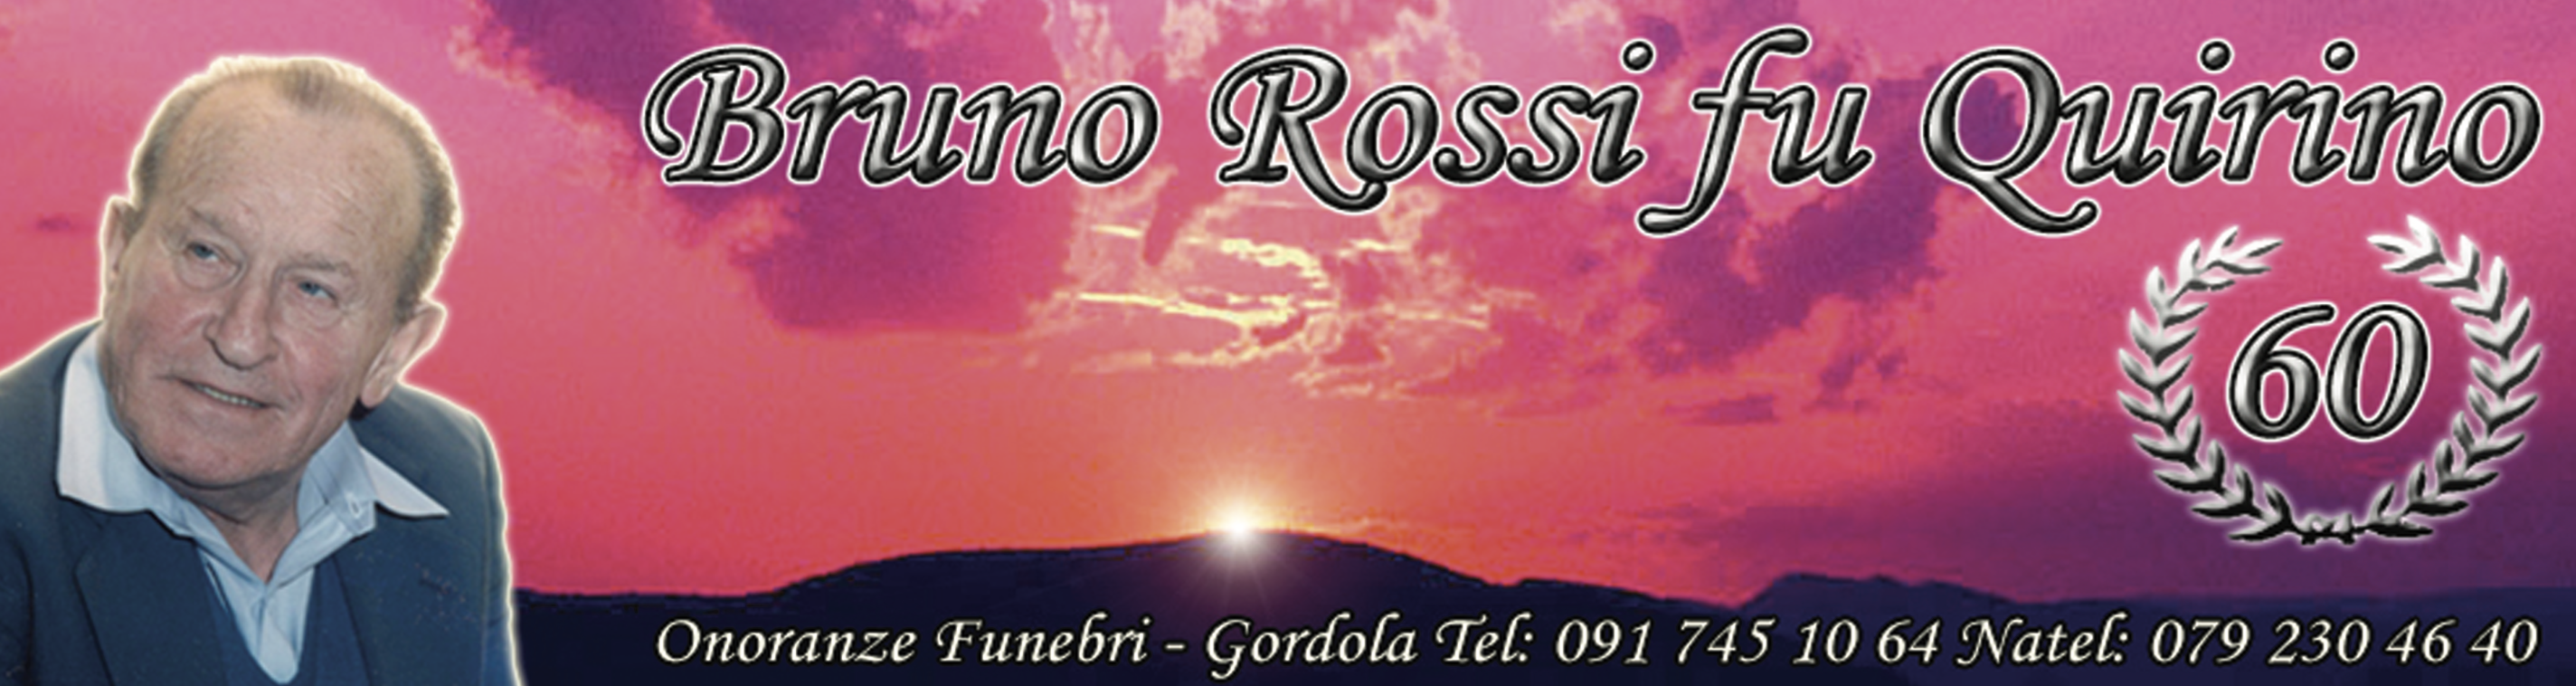 324_Bruno_Rossi